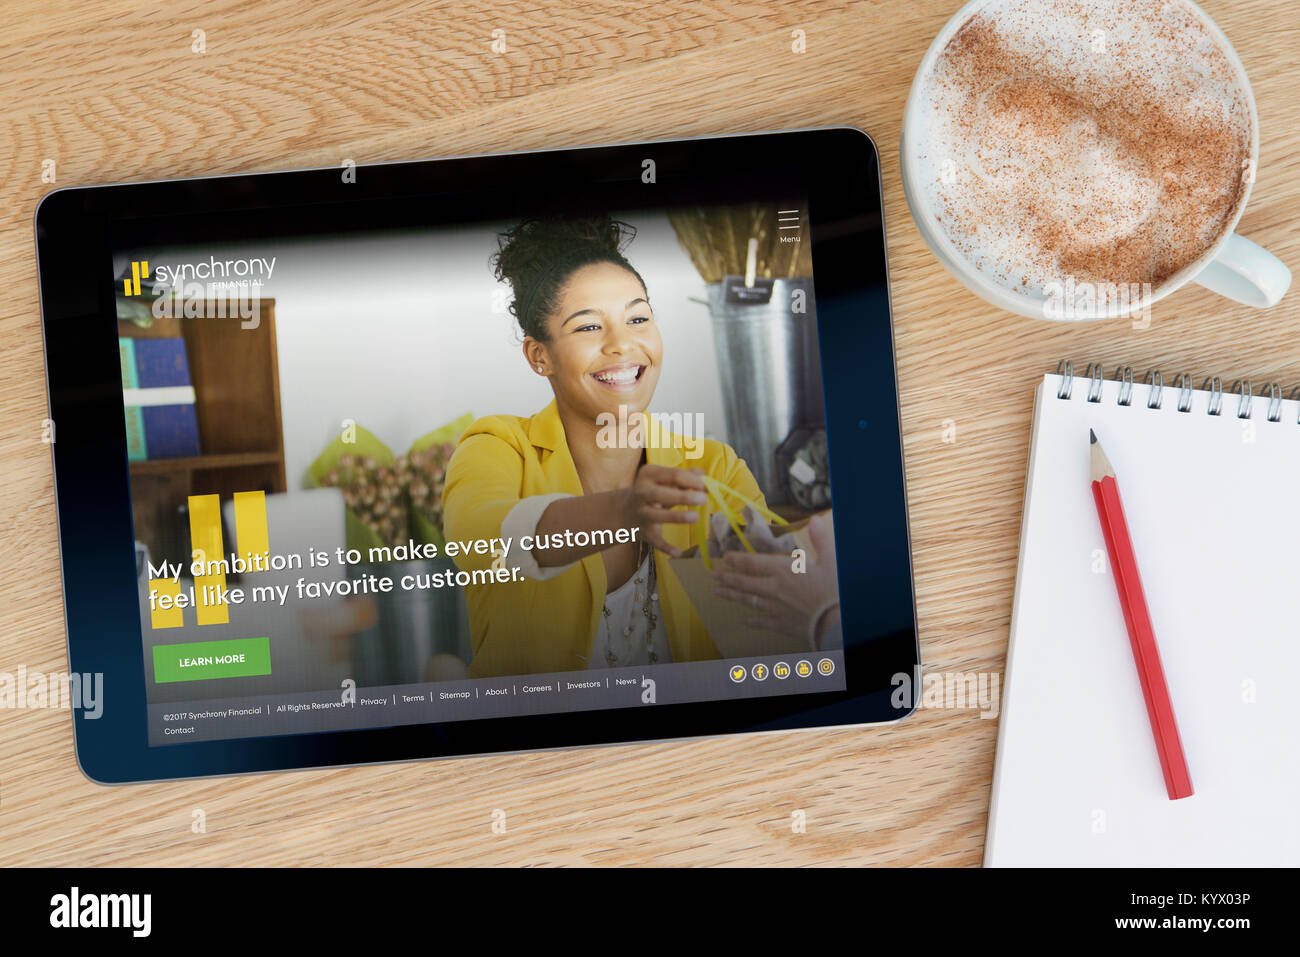 La sincronia sito finanziario su un tablet iPad, su di un tavolo di legno accanto a un blocco note, matita e tazza di caffè (editoriale solo) Foto Stock